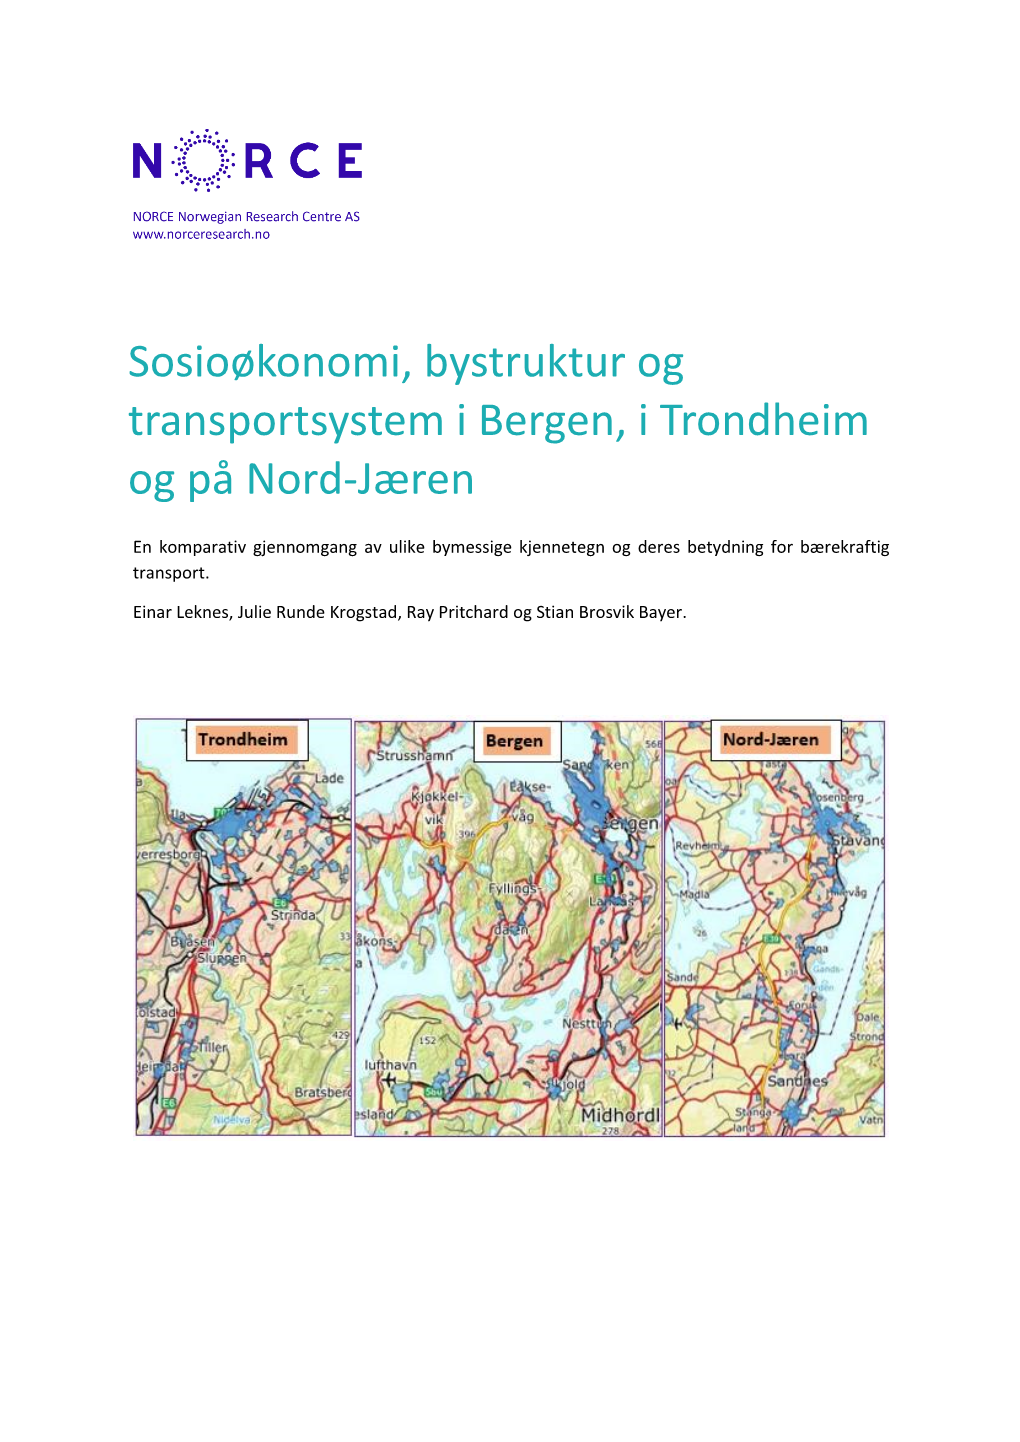 Sosioøkonomi, Bystruktur Og Transportsystem I Bergen, I Trondheim Og På Nord-Jæren